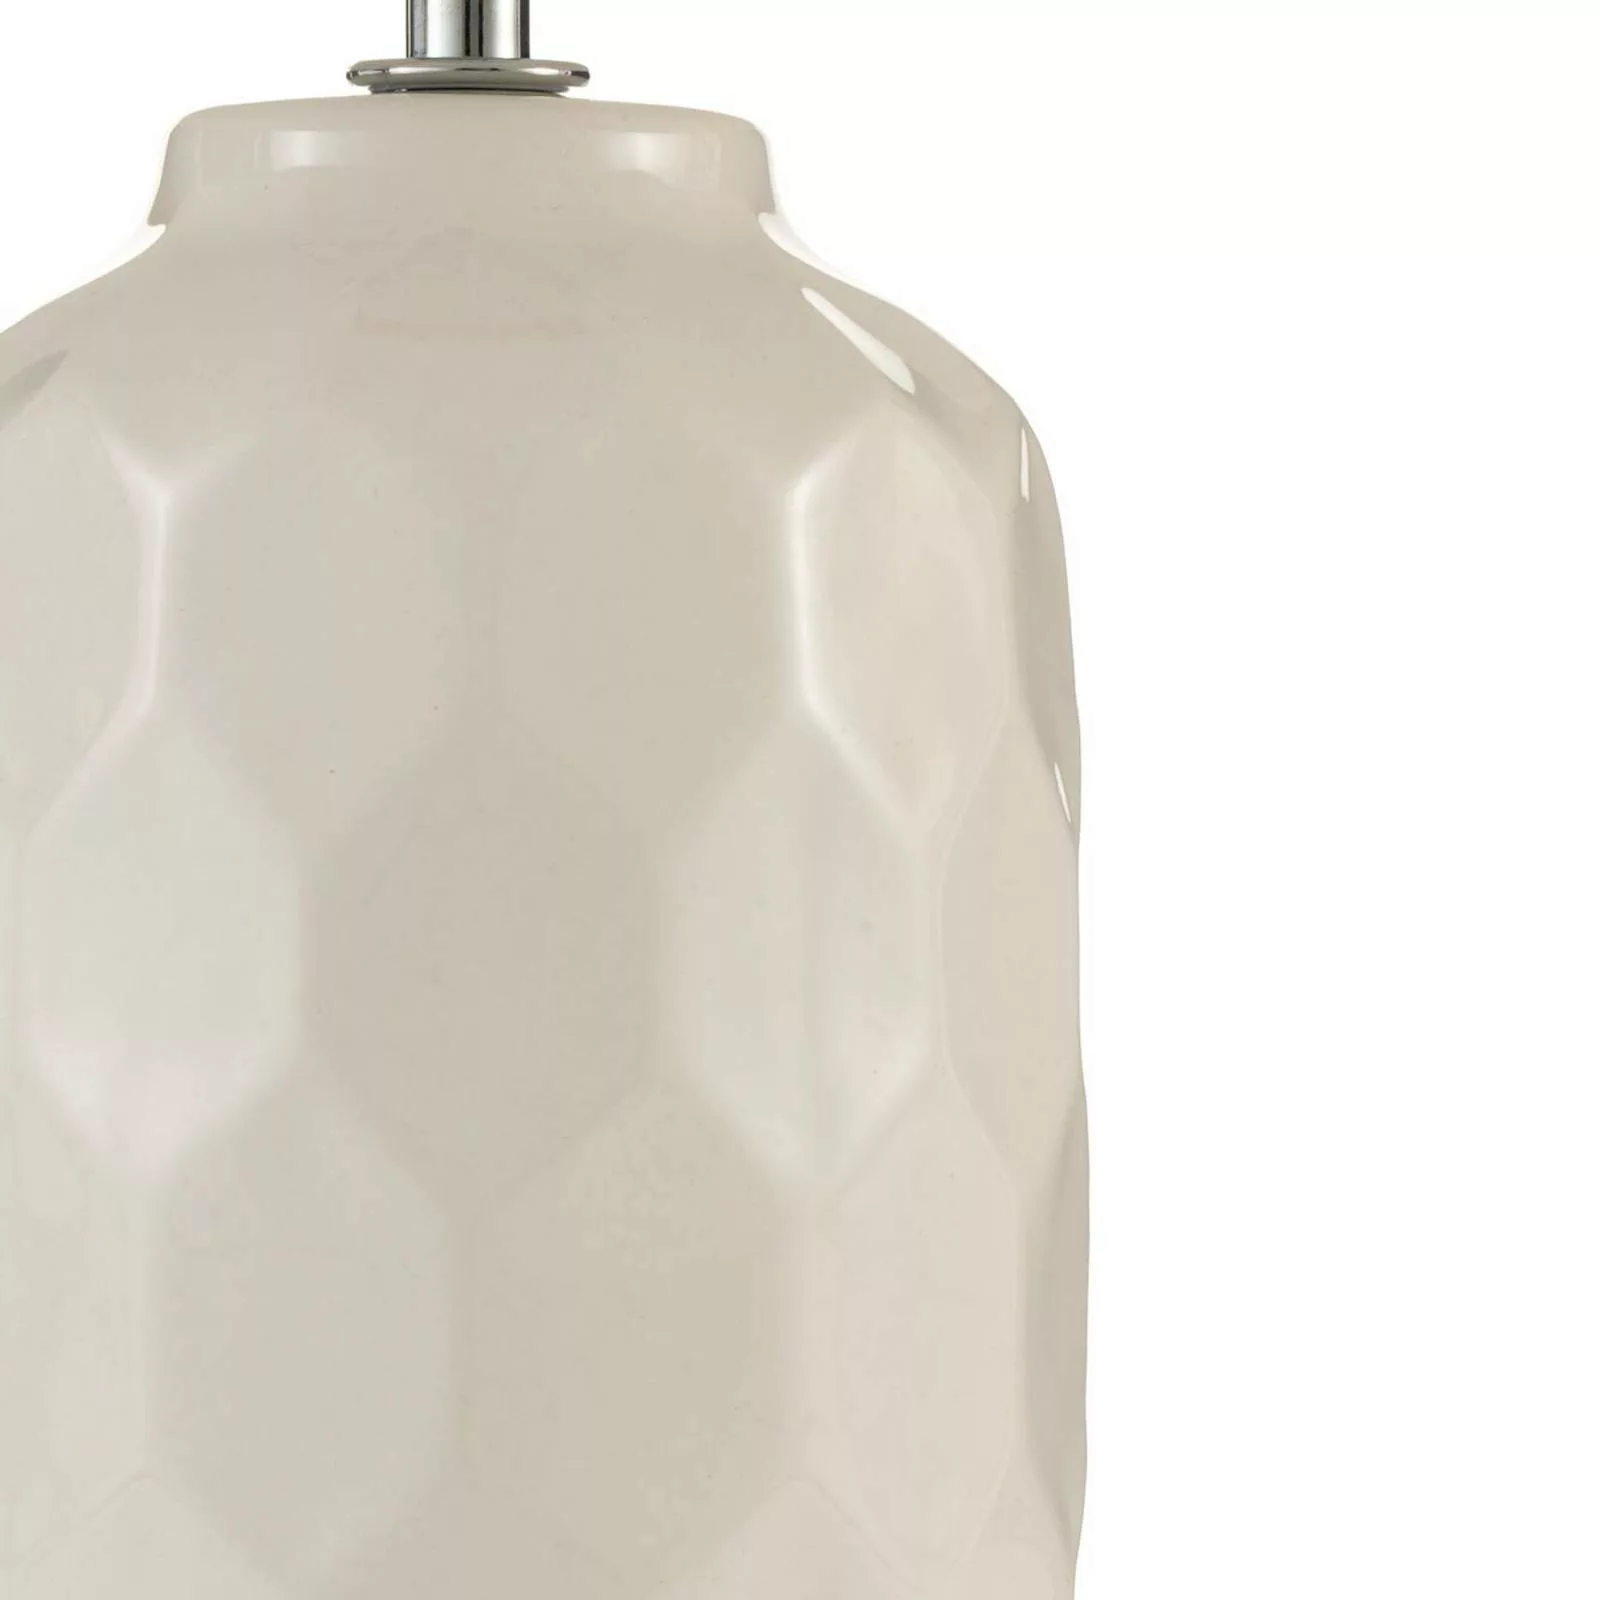 Pauleen Tischleuchte »Charming Sparkle max.20W Crème Stoff/Keramik«, 1 flam günstig online kaufen